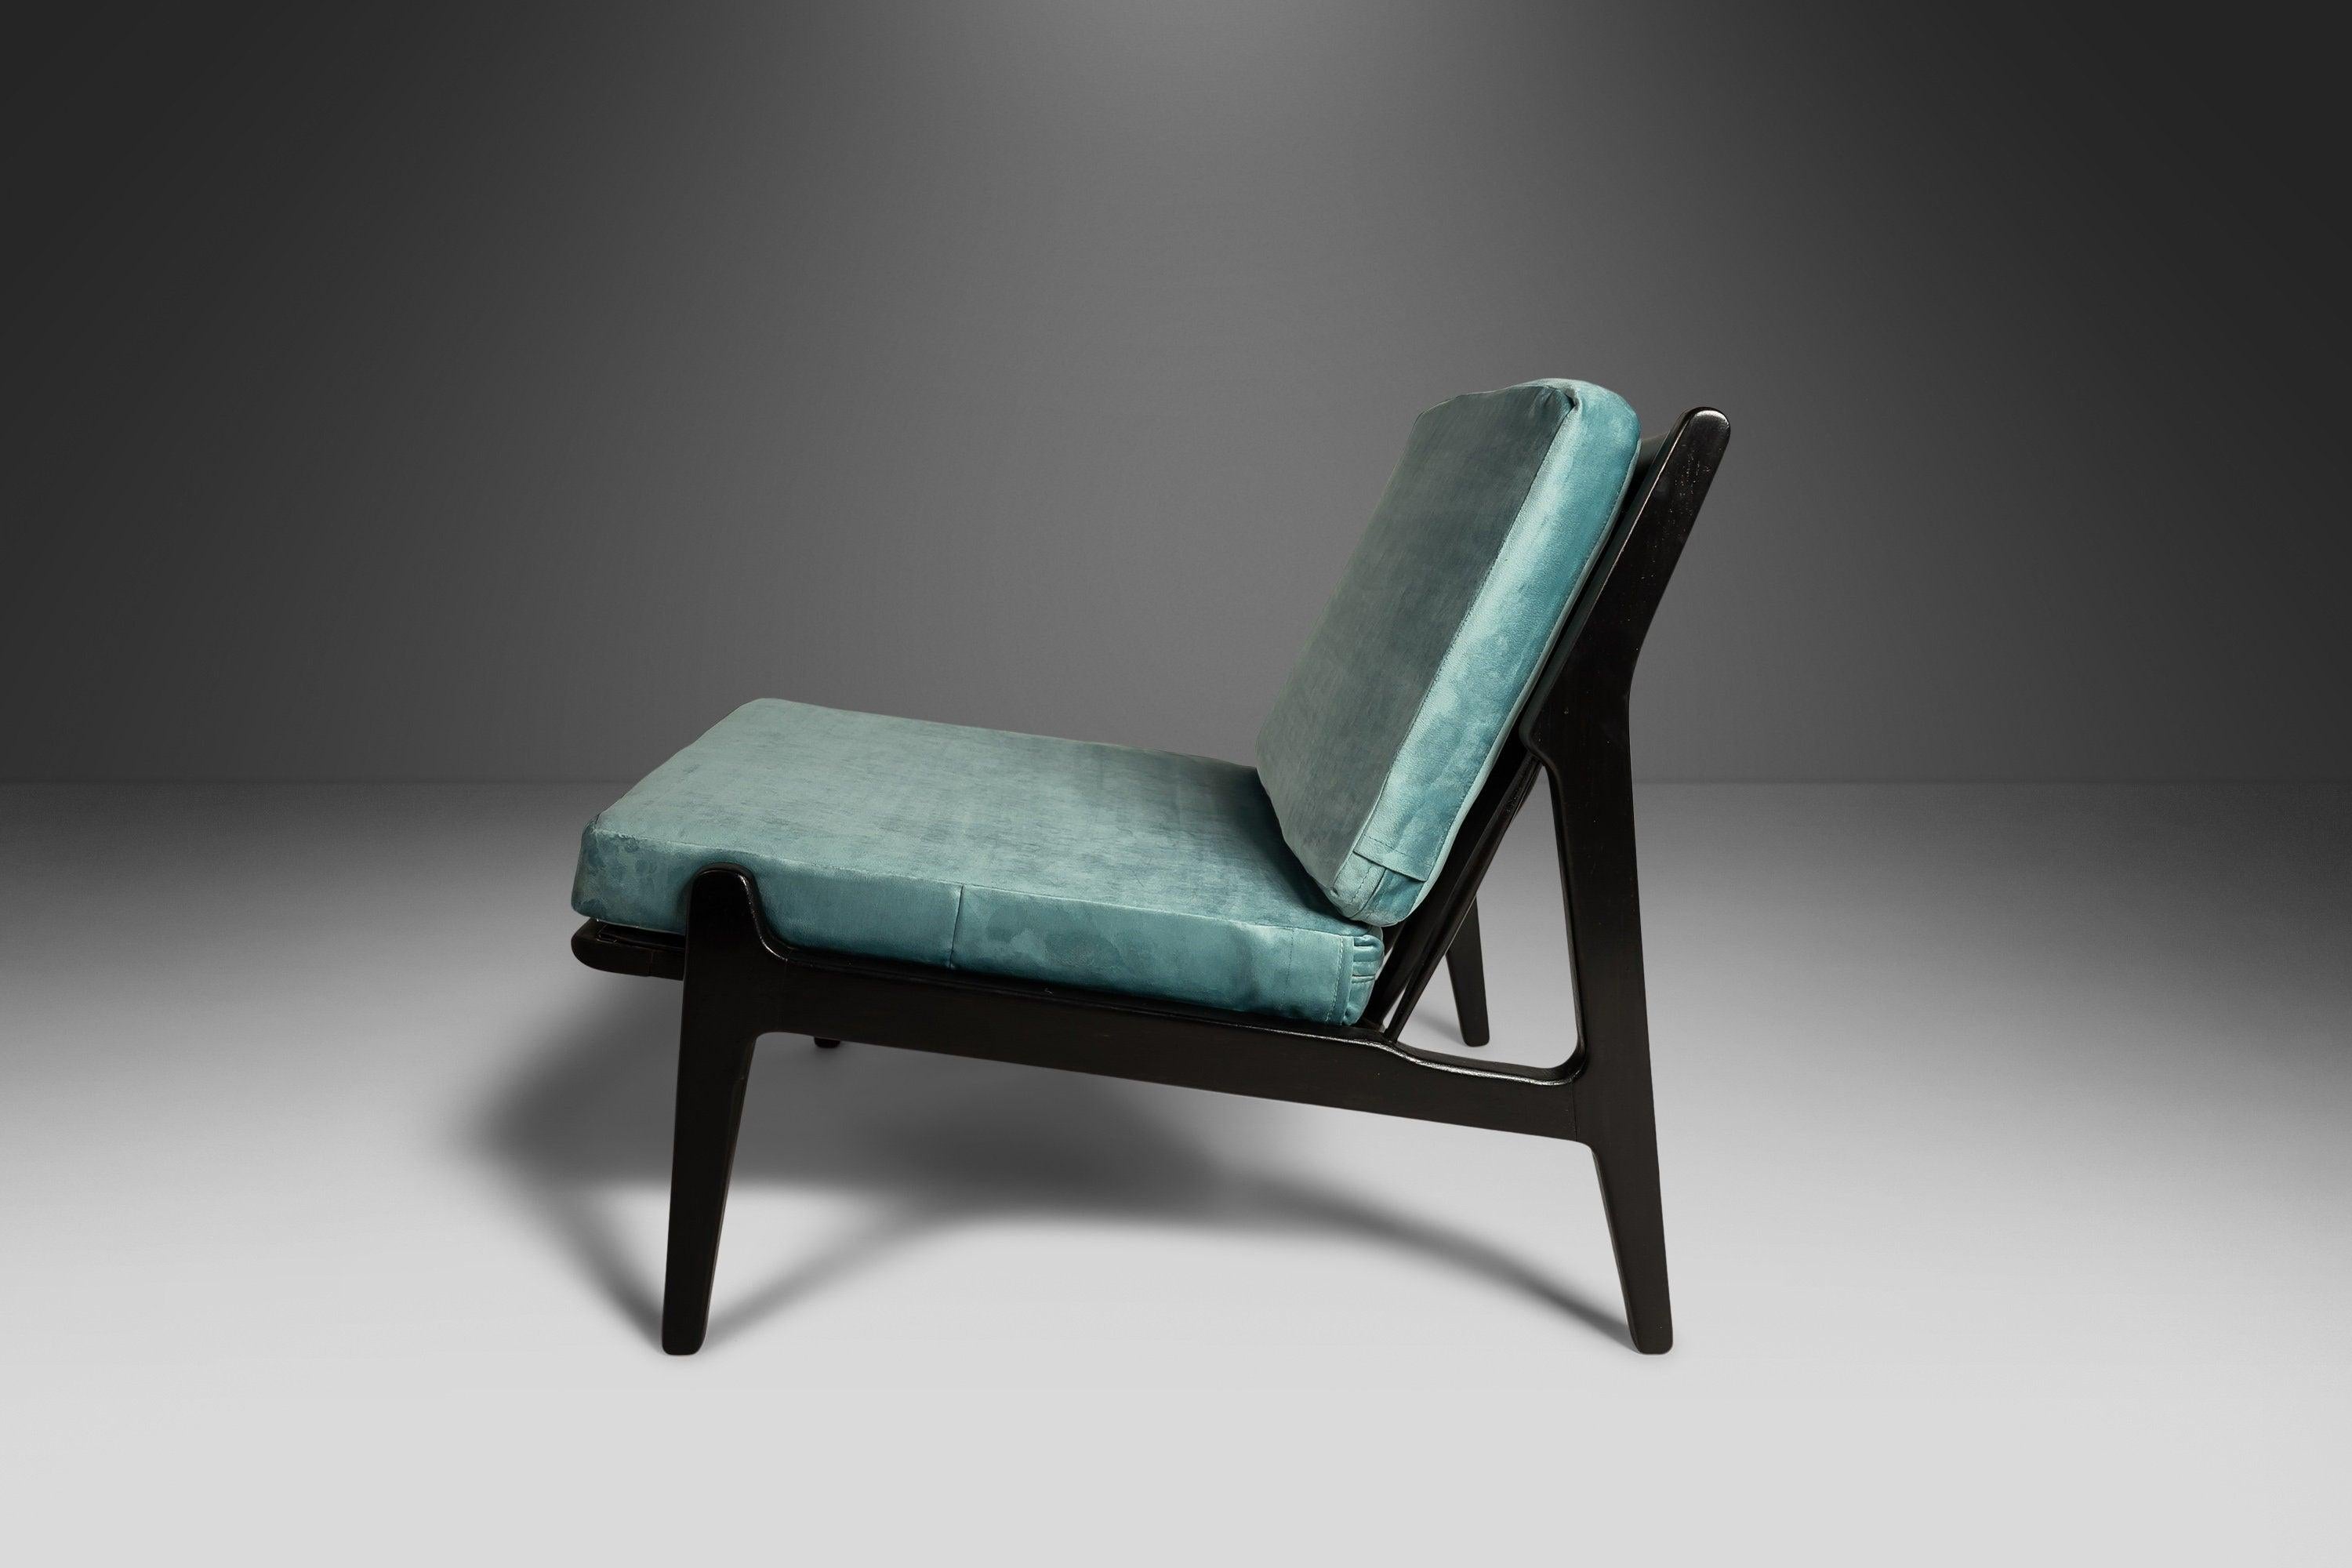 Conçue par l'artisan danois visionnaire Ib Kofod Larsen au début des années 1950, cette chaise modèle est antérieure à son emblématique (et de forme similaire) chaise 